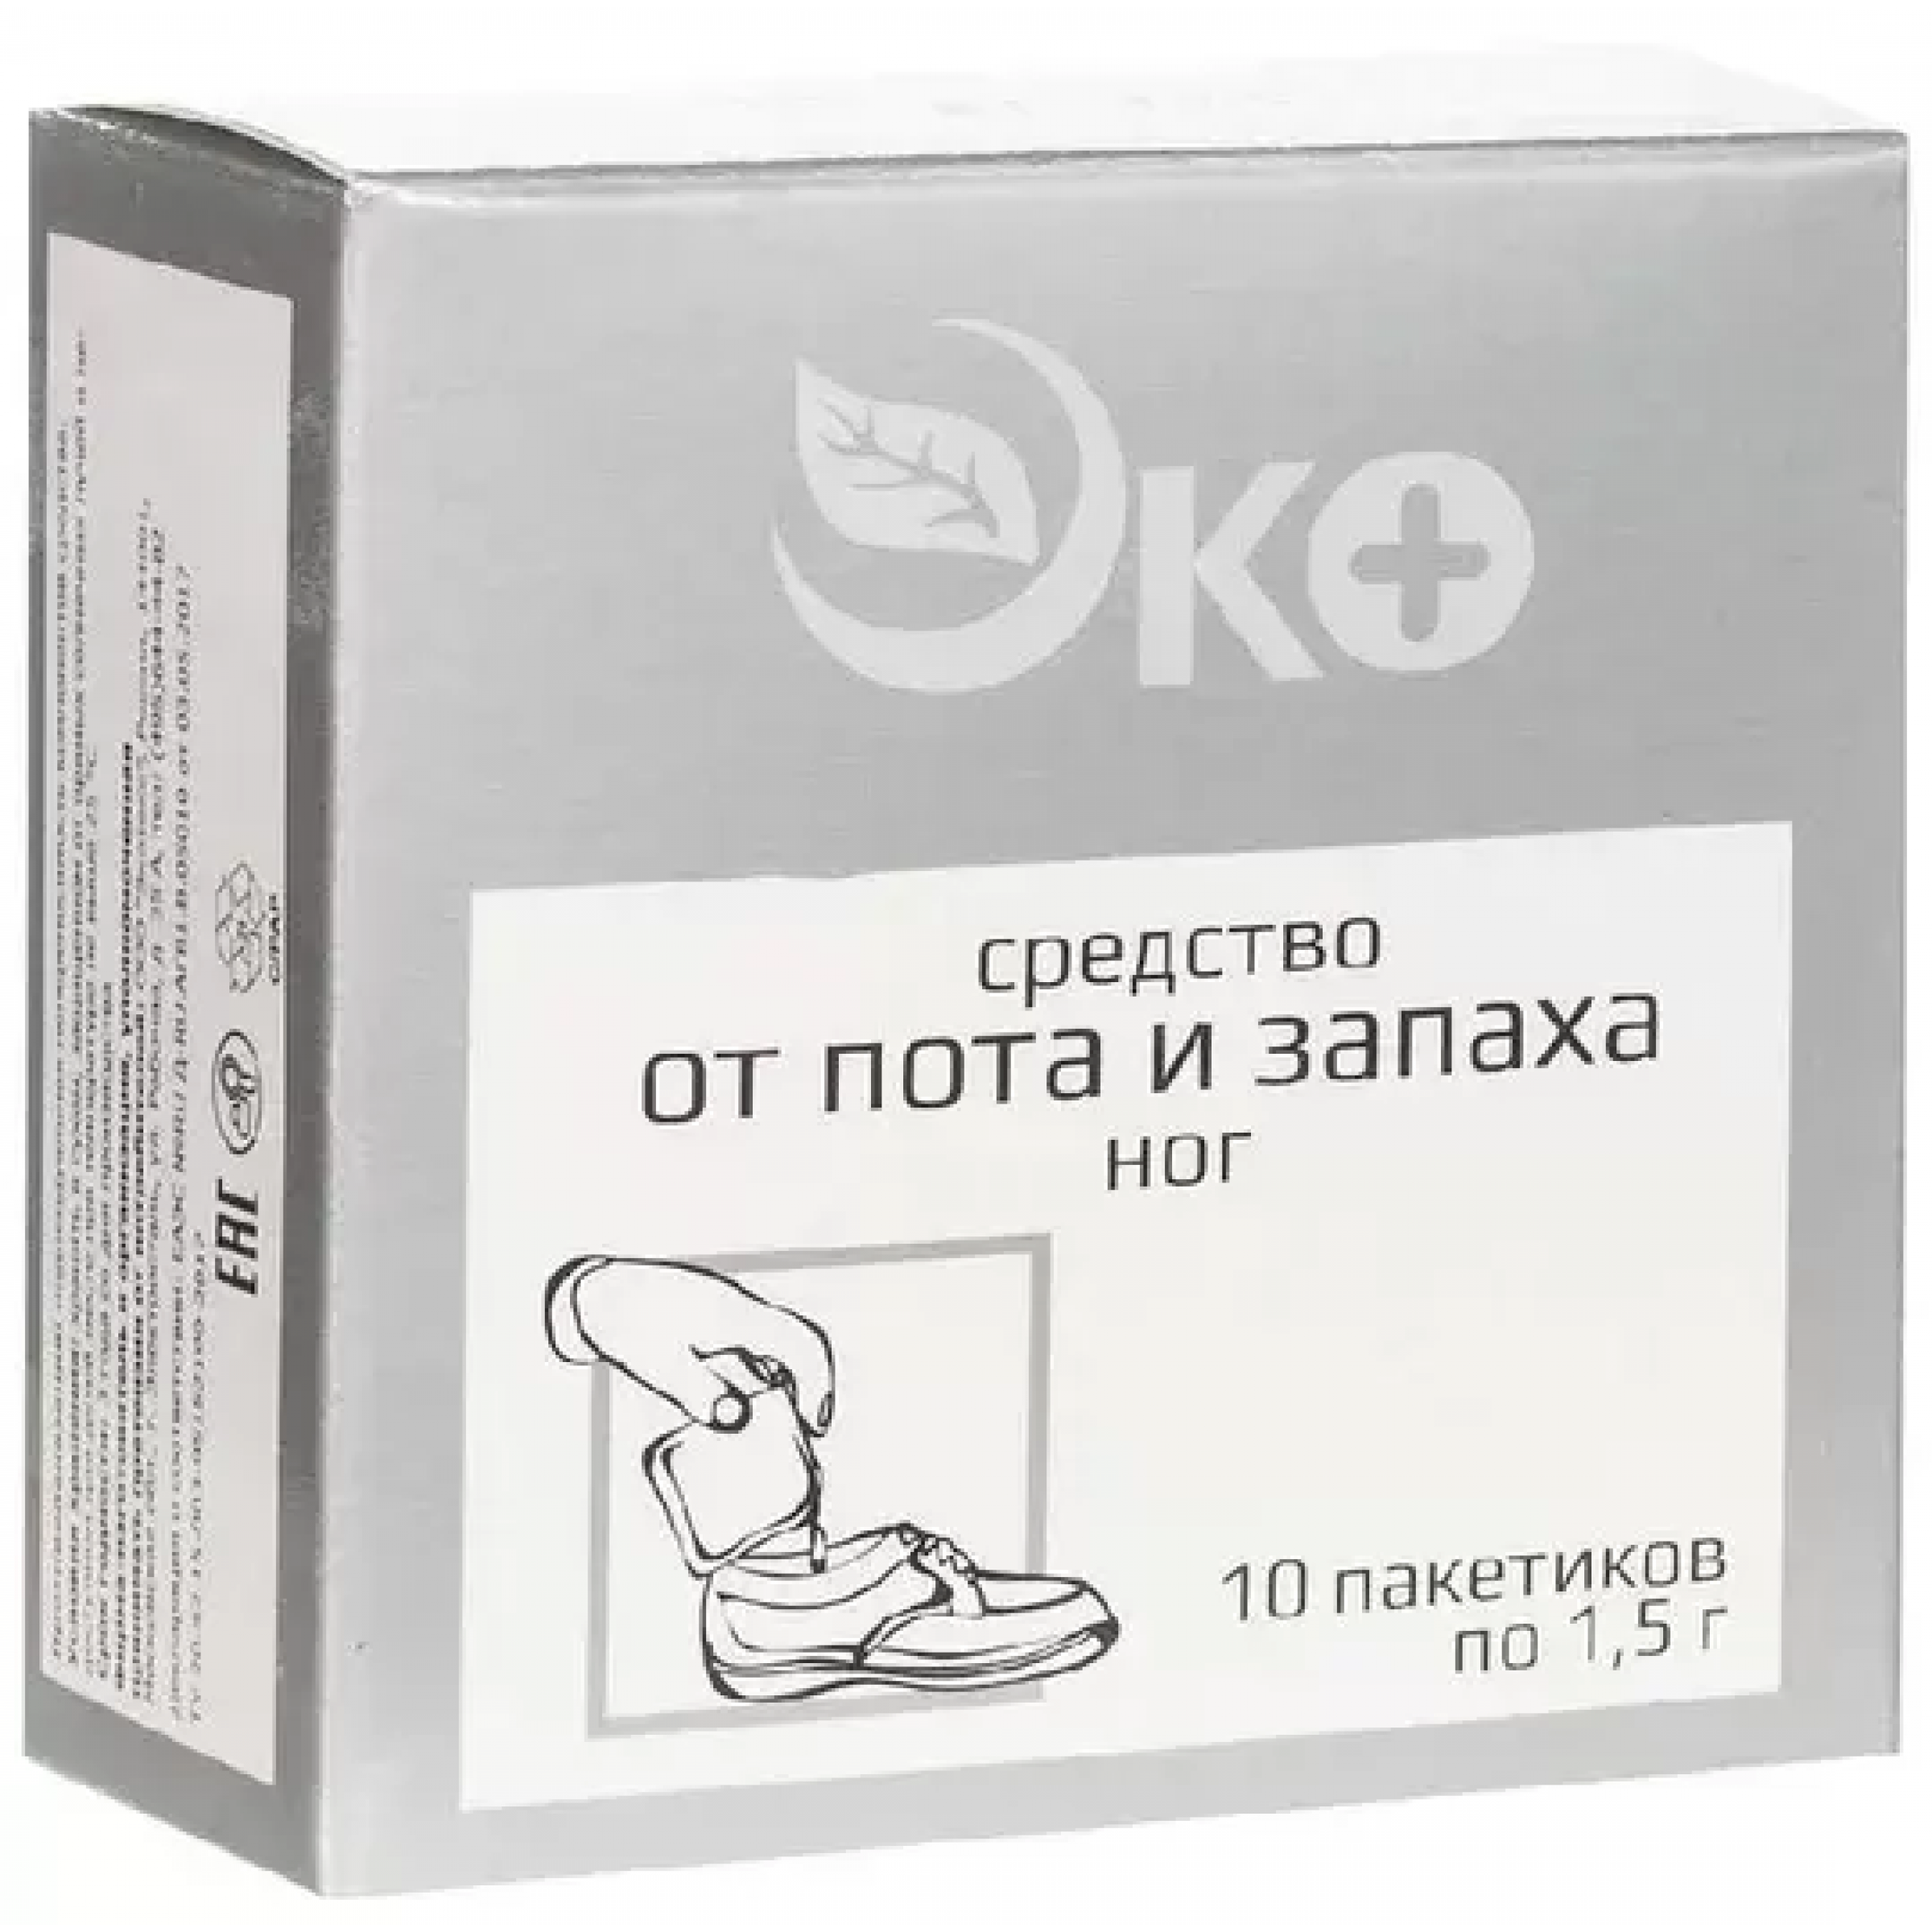 Средство от пота и запаха ног ЭКО 10 пакетов